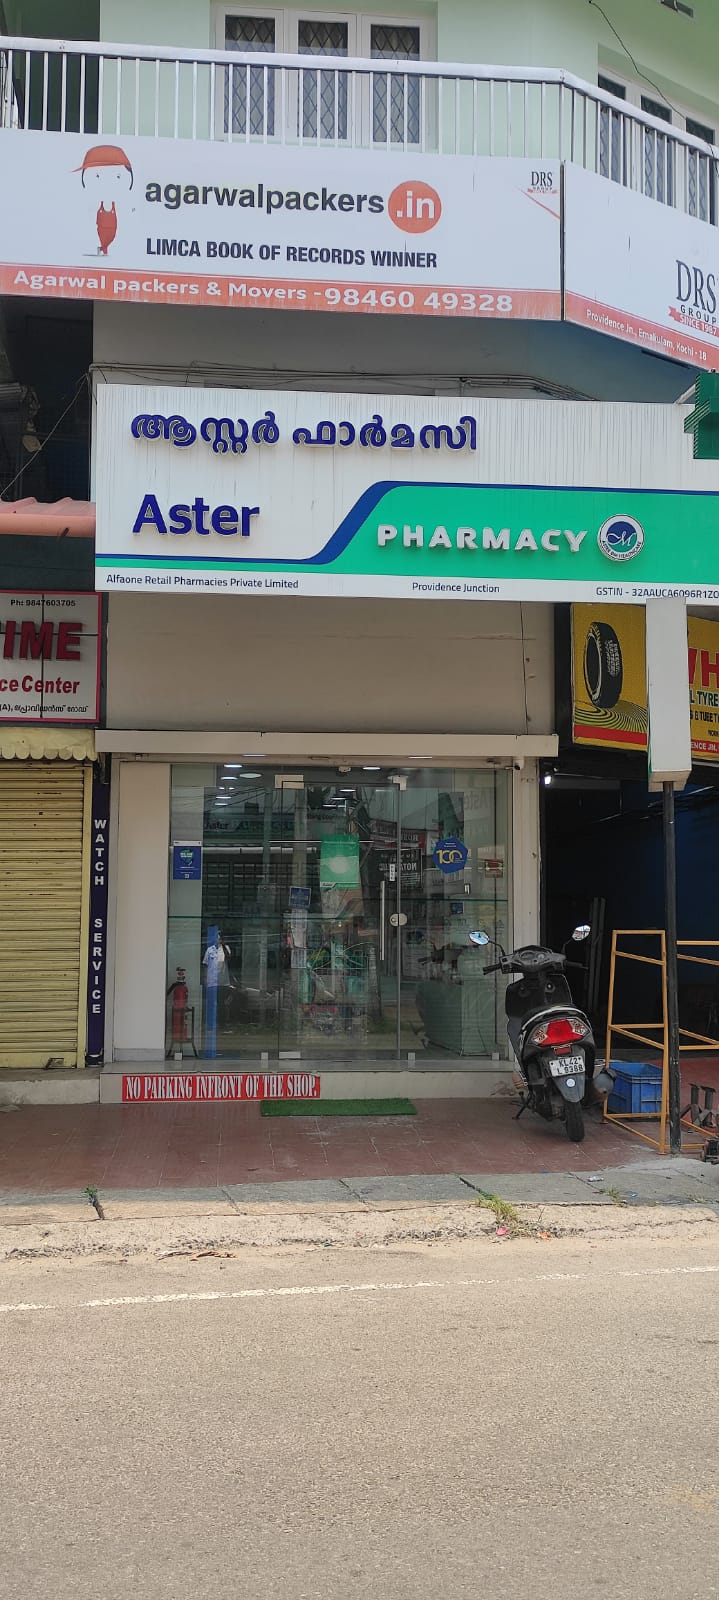 Aster Pharmacy in Providence, Ernakulam